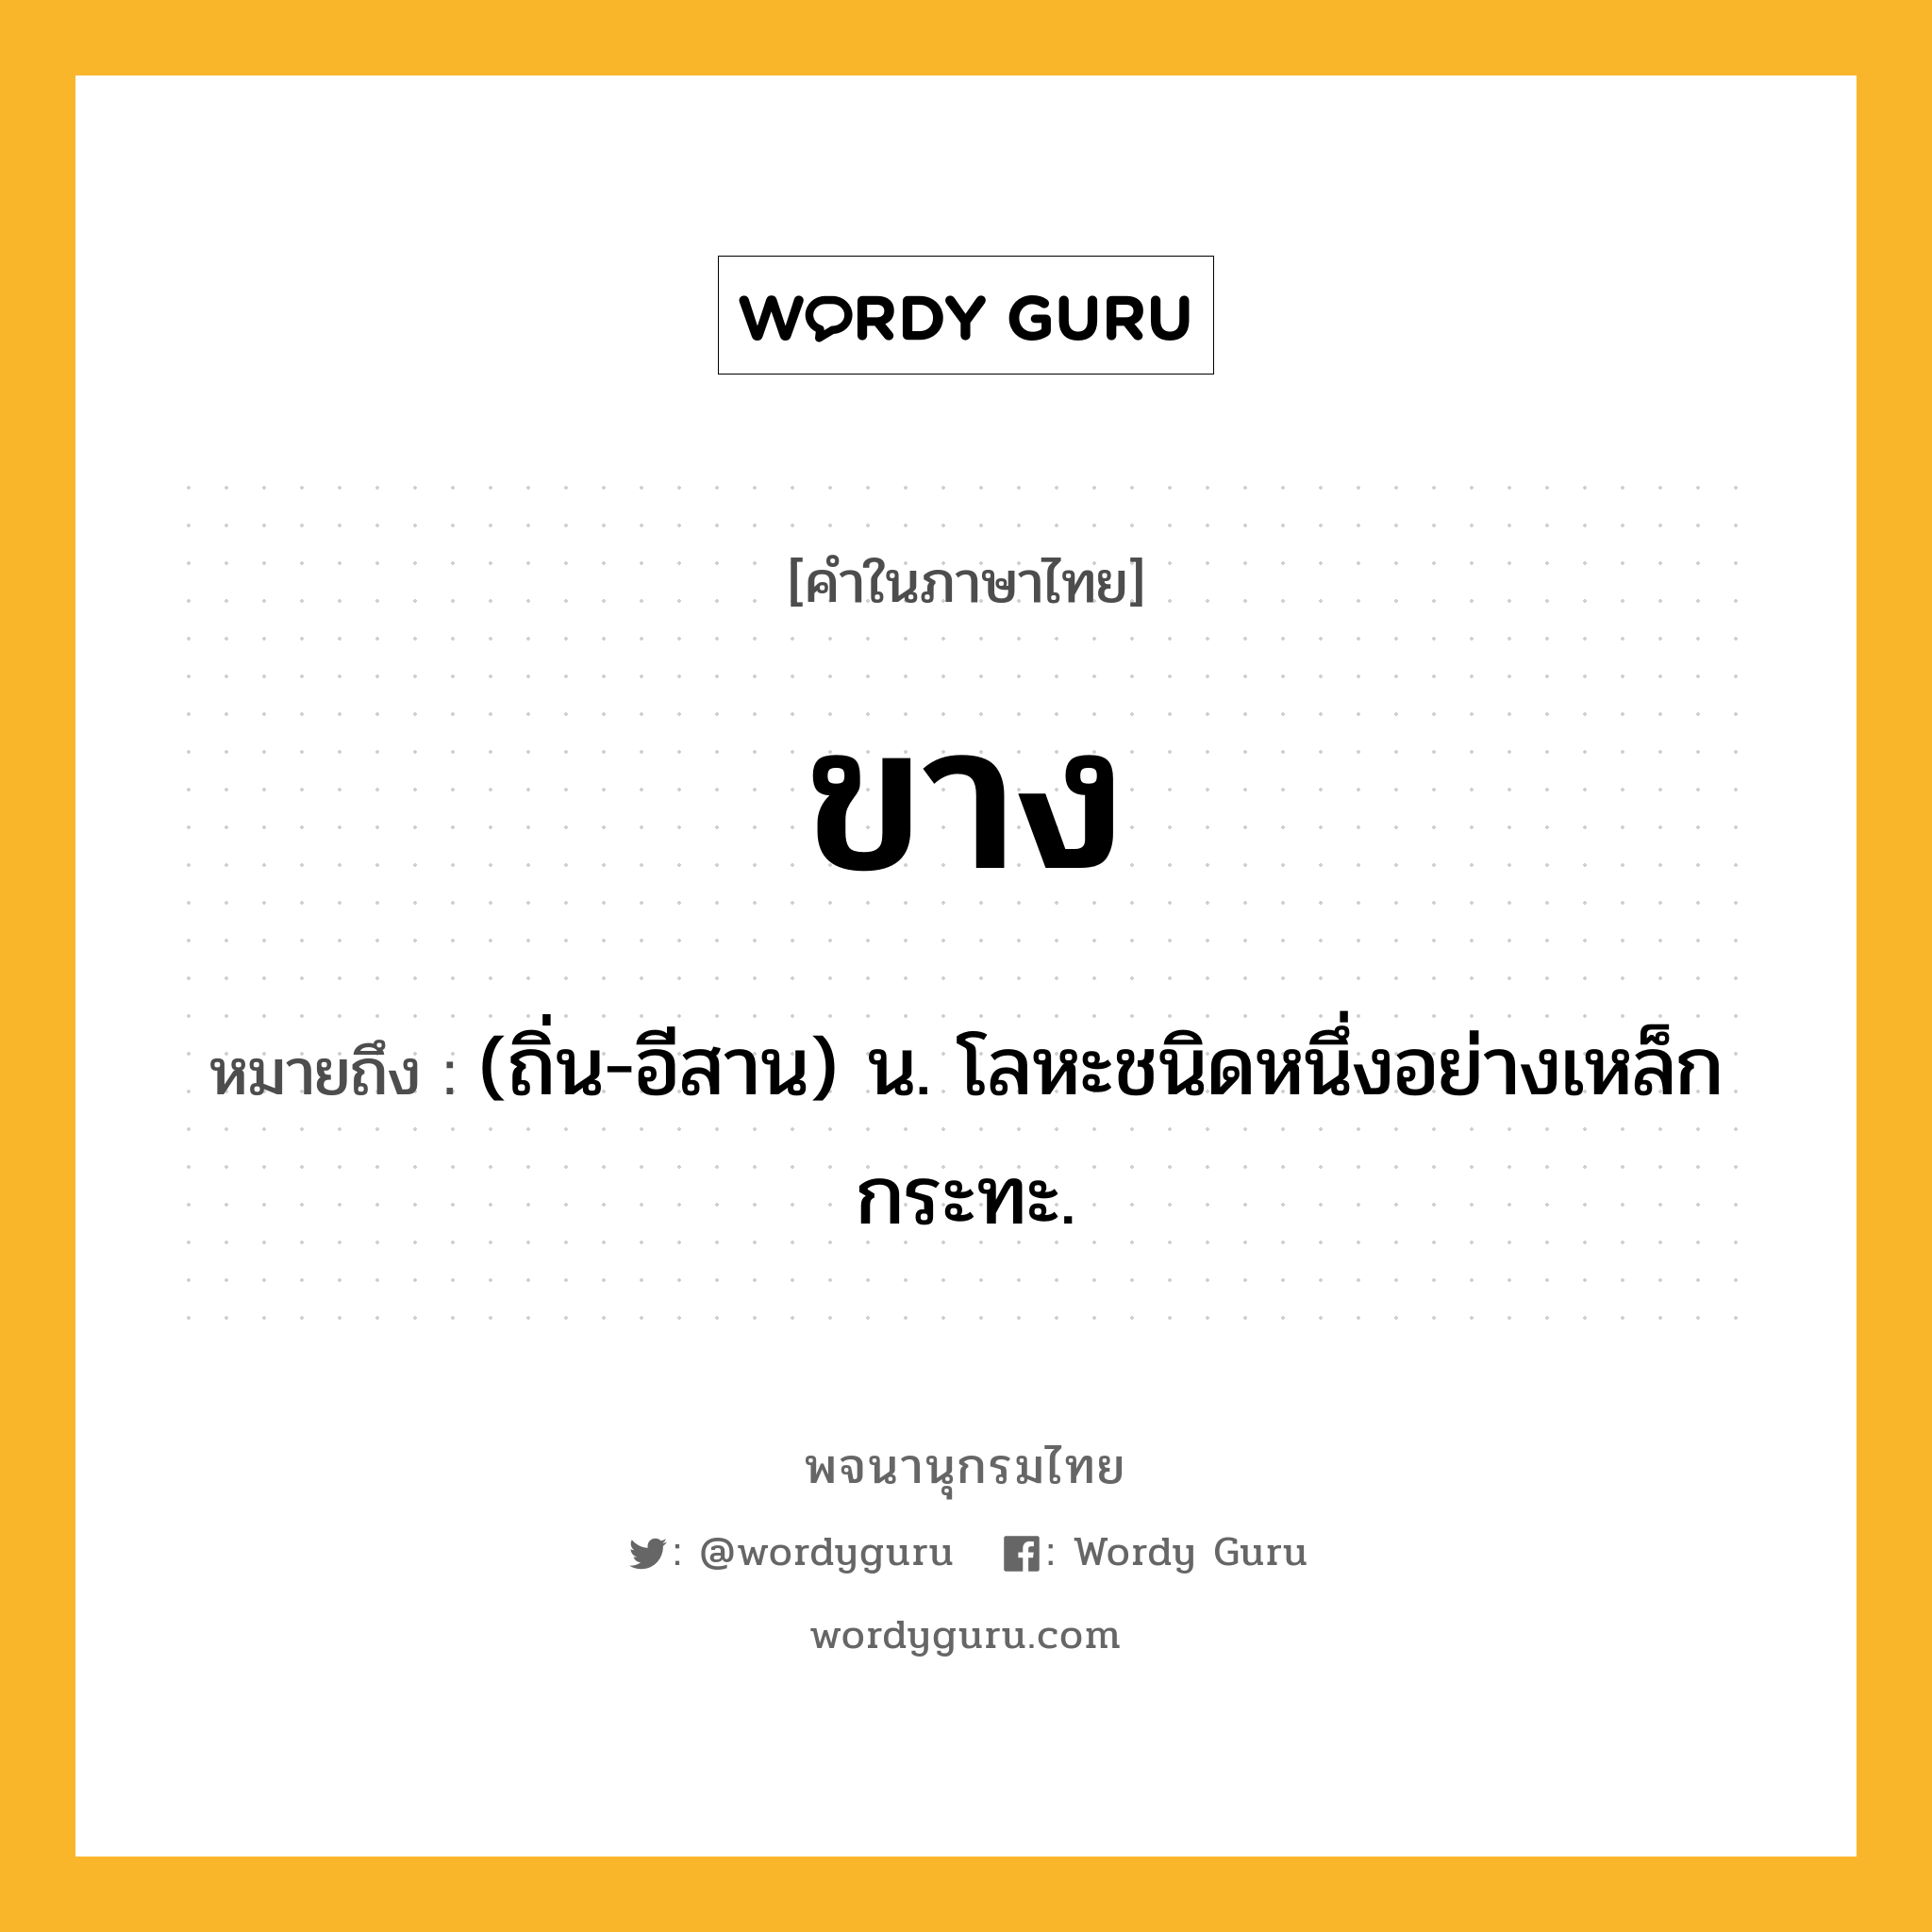 ขาง ความหมาย หมายถึงอะไร?, คำในภาษาไทย ขาง หมายถึง (ถิ่น-อีสาน) น. โลหะชนิดหนึ่งอย่างเหล็กกระทะ.